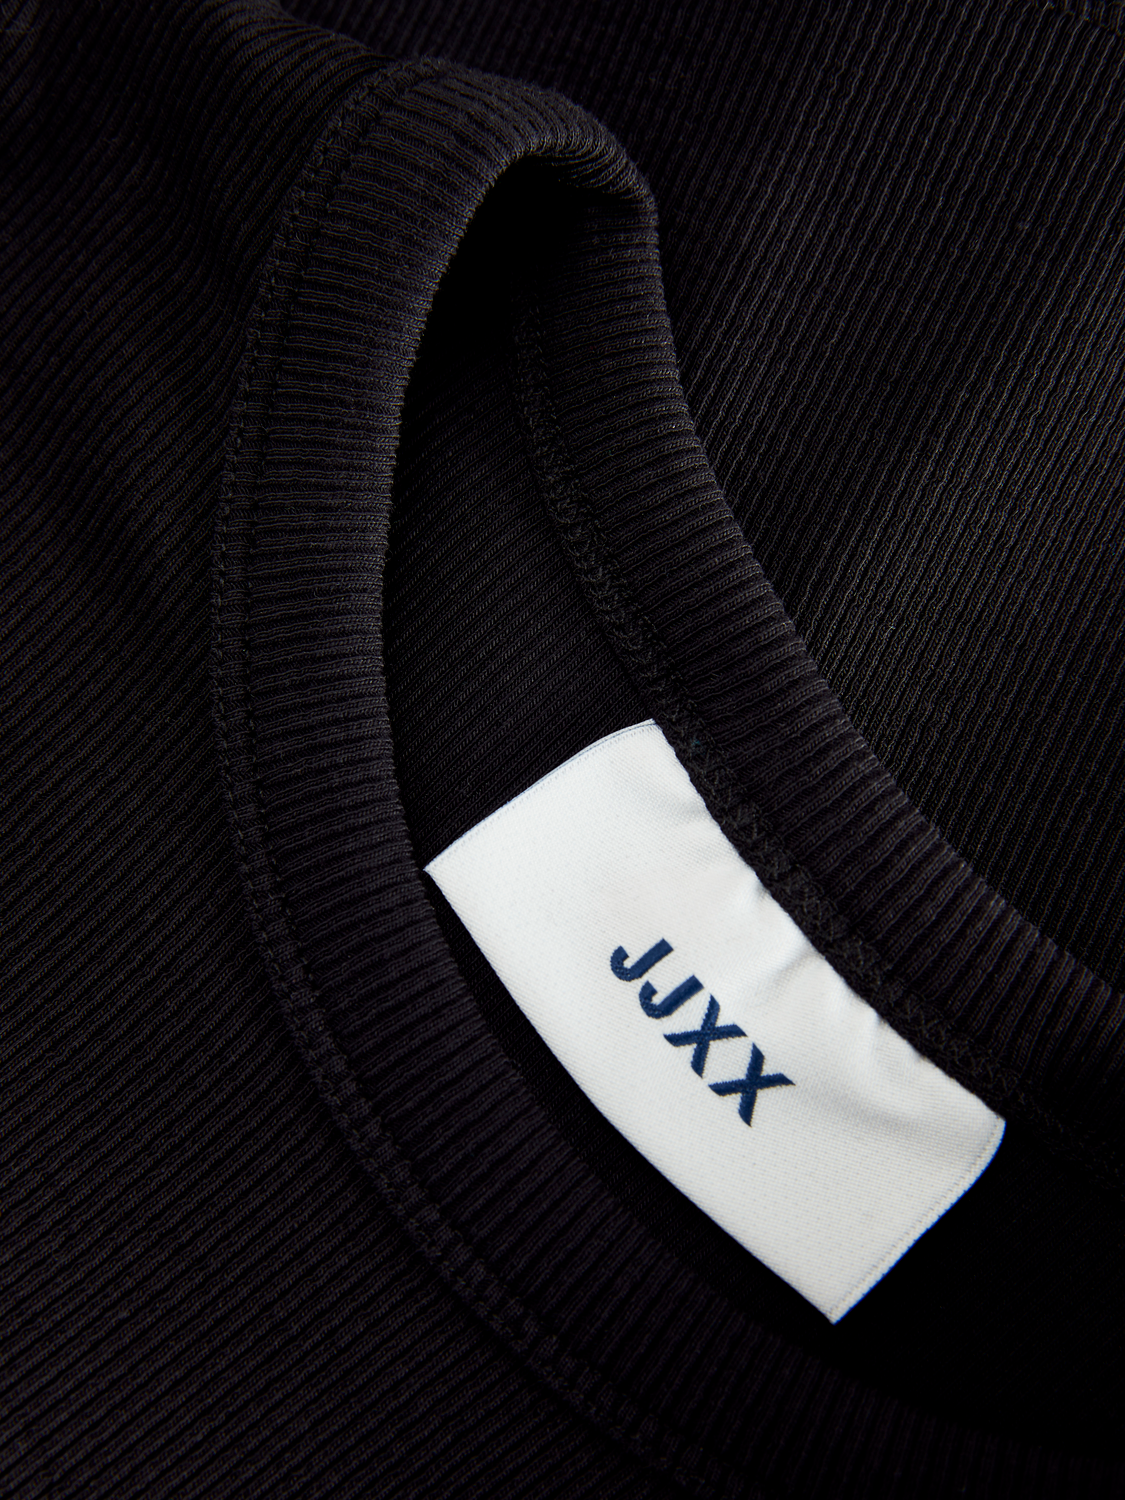 JJXX JXFLORIE T-skjorte -Black - 12217164